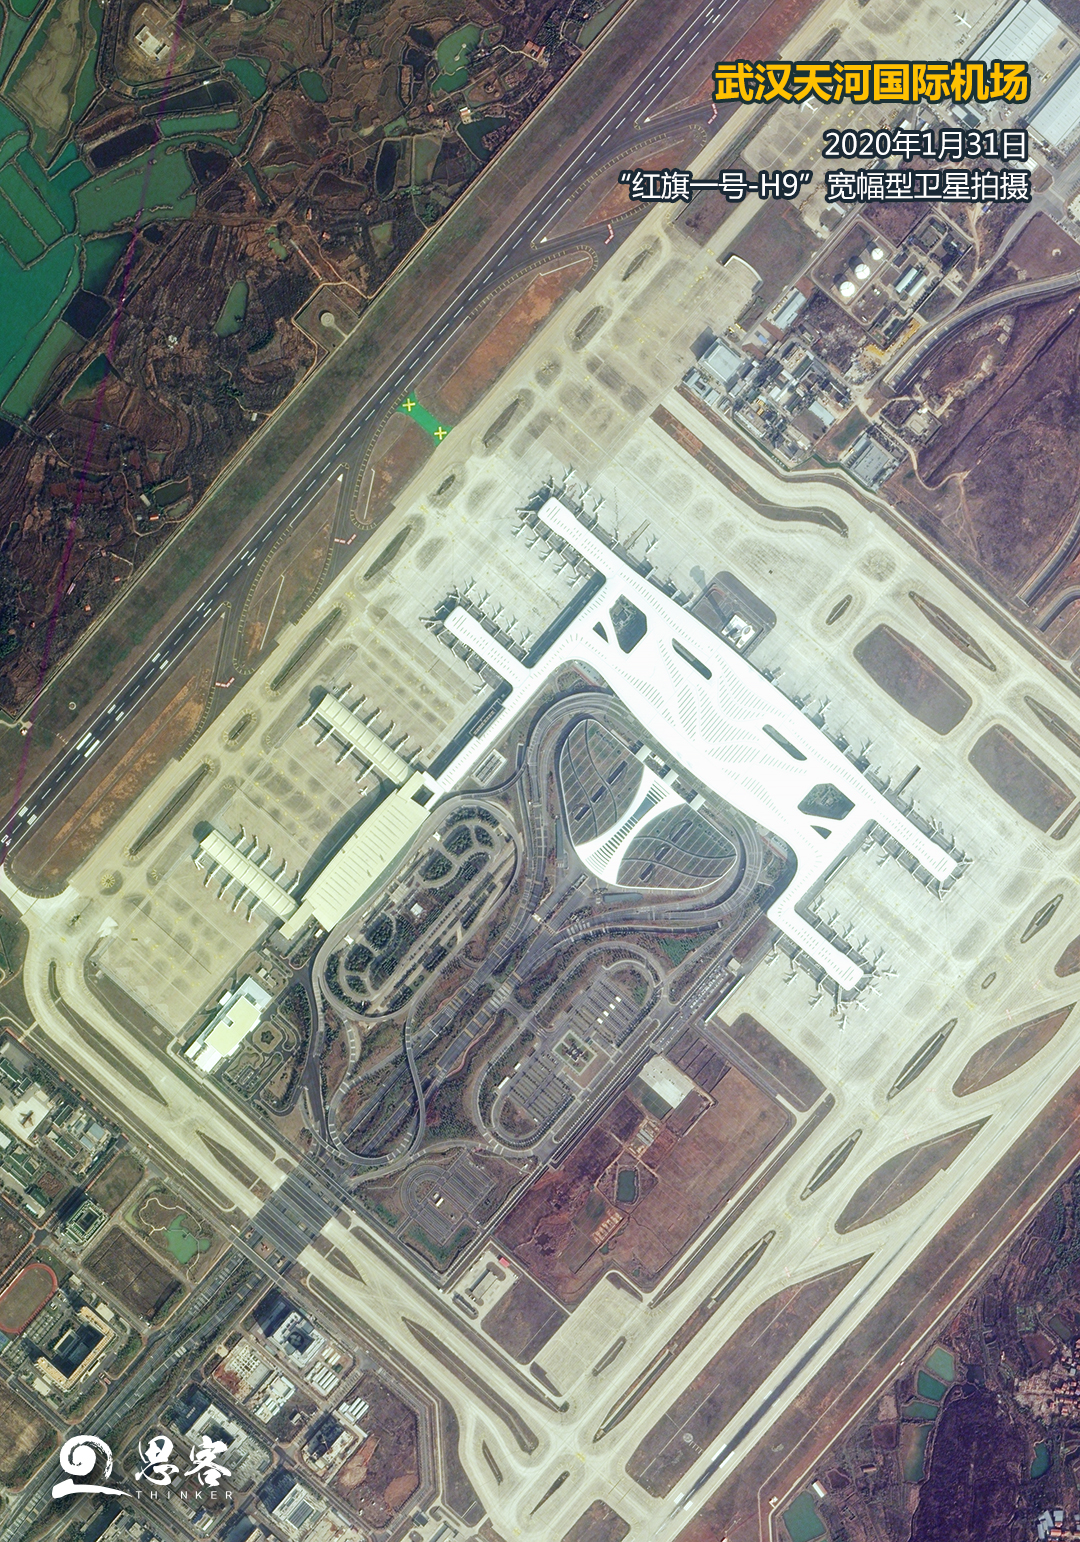 1月31日卫星拍摄的武汉天河国际机场.卫星数据来源:红旗一号-h9